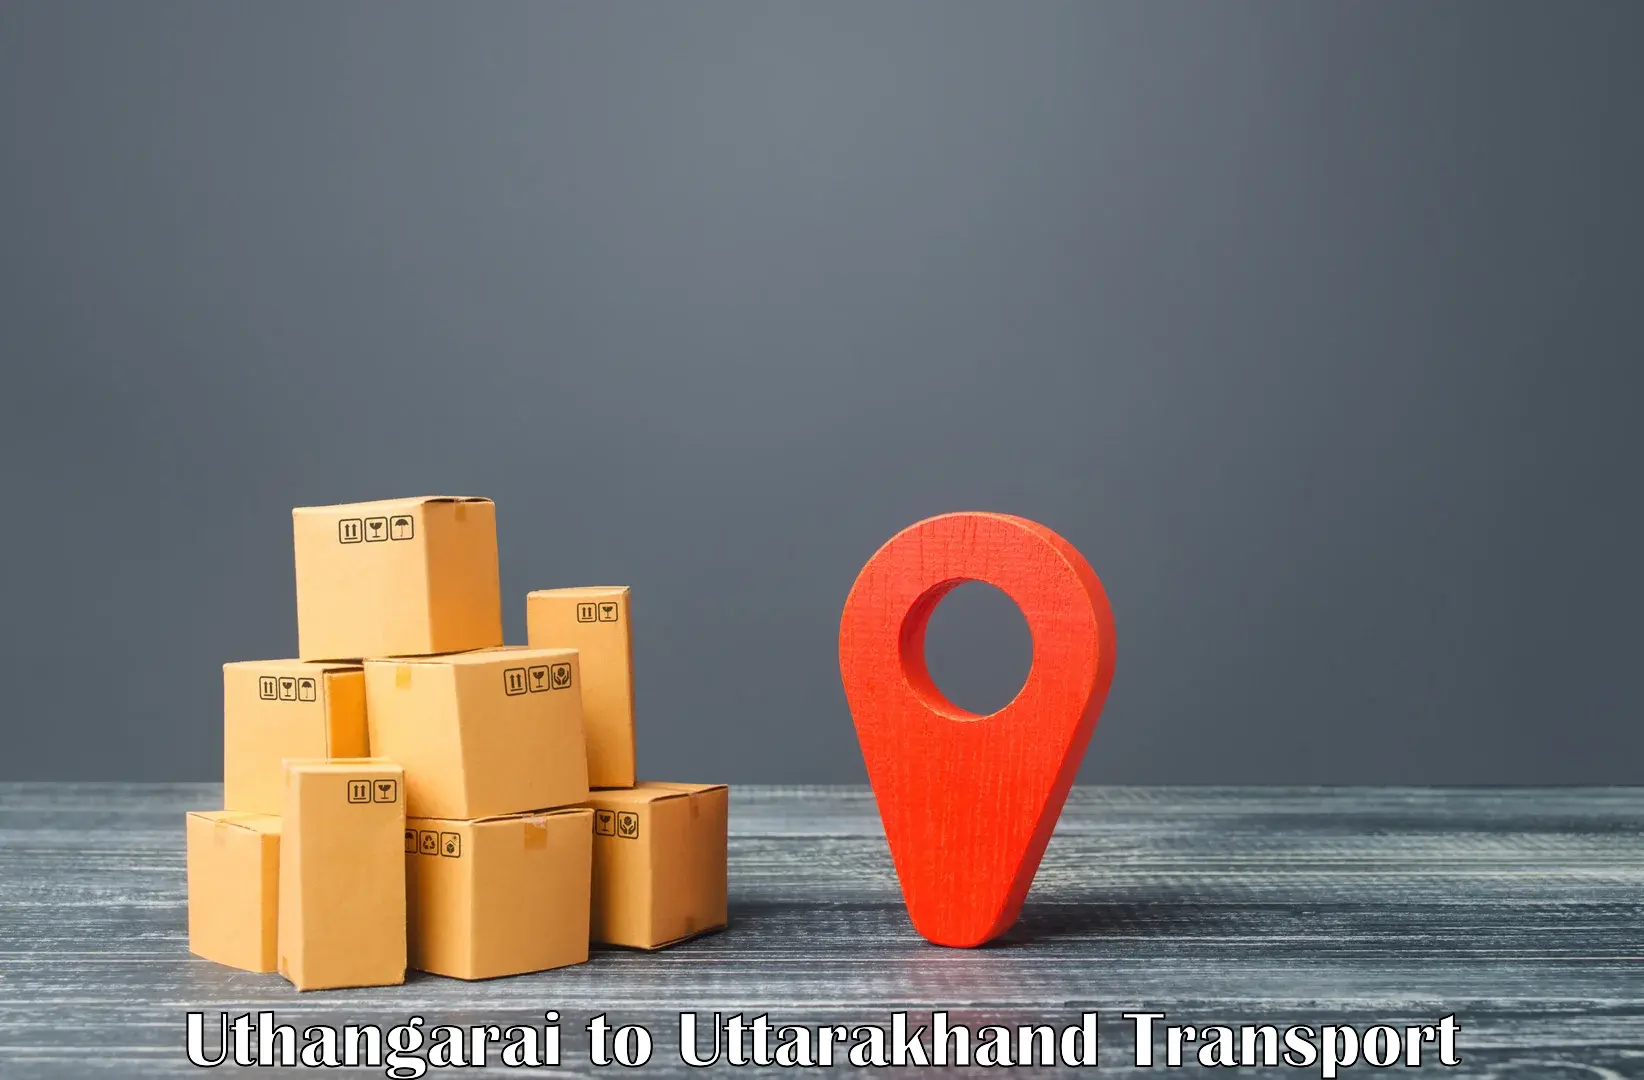 Cargo transportation services Uthangarai to Uttarakhand